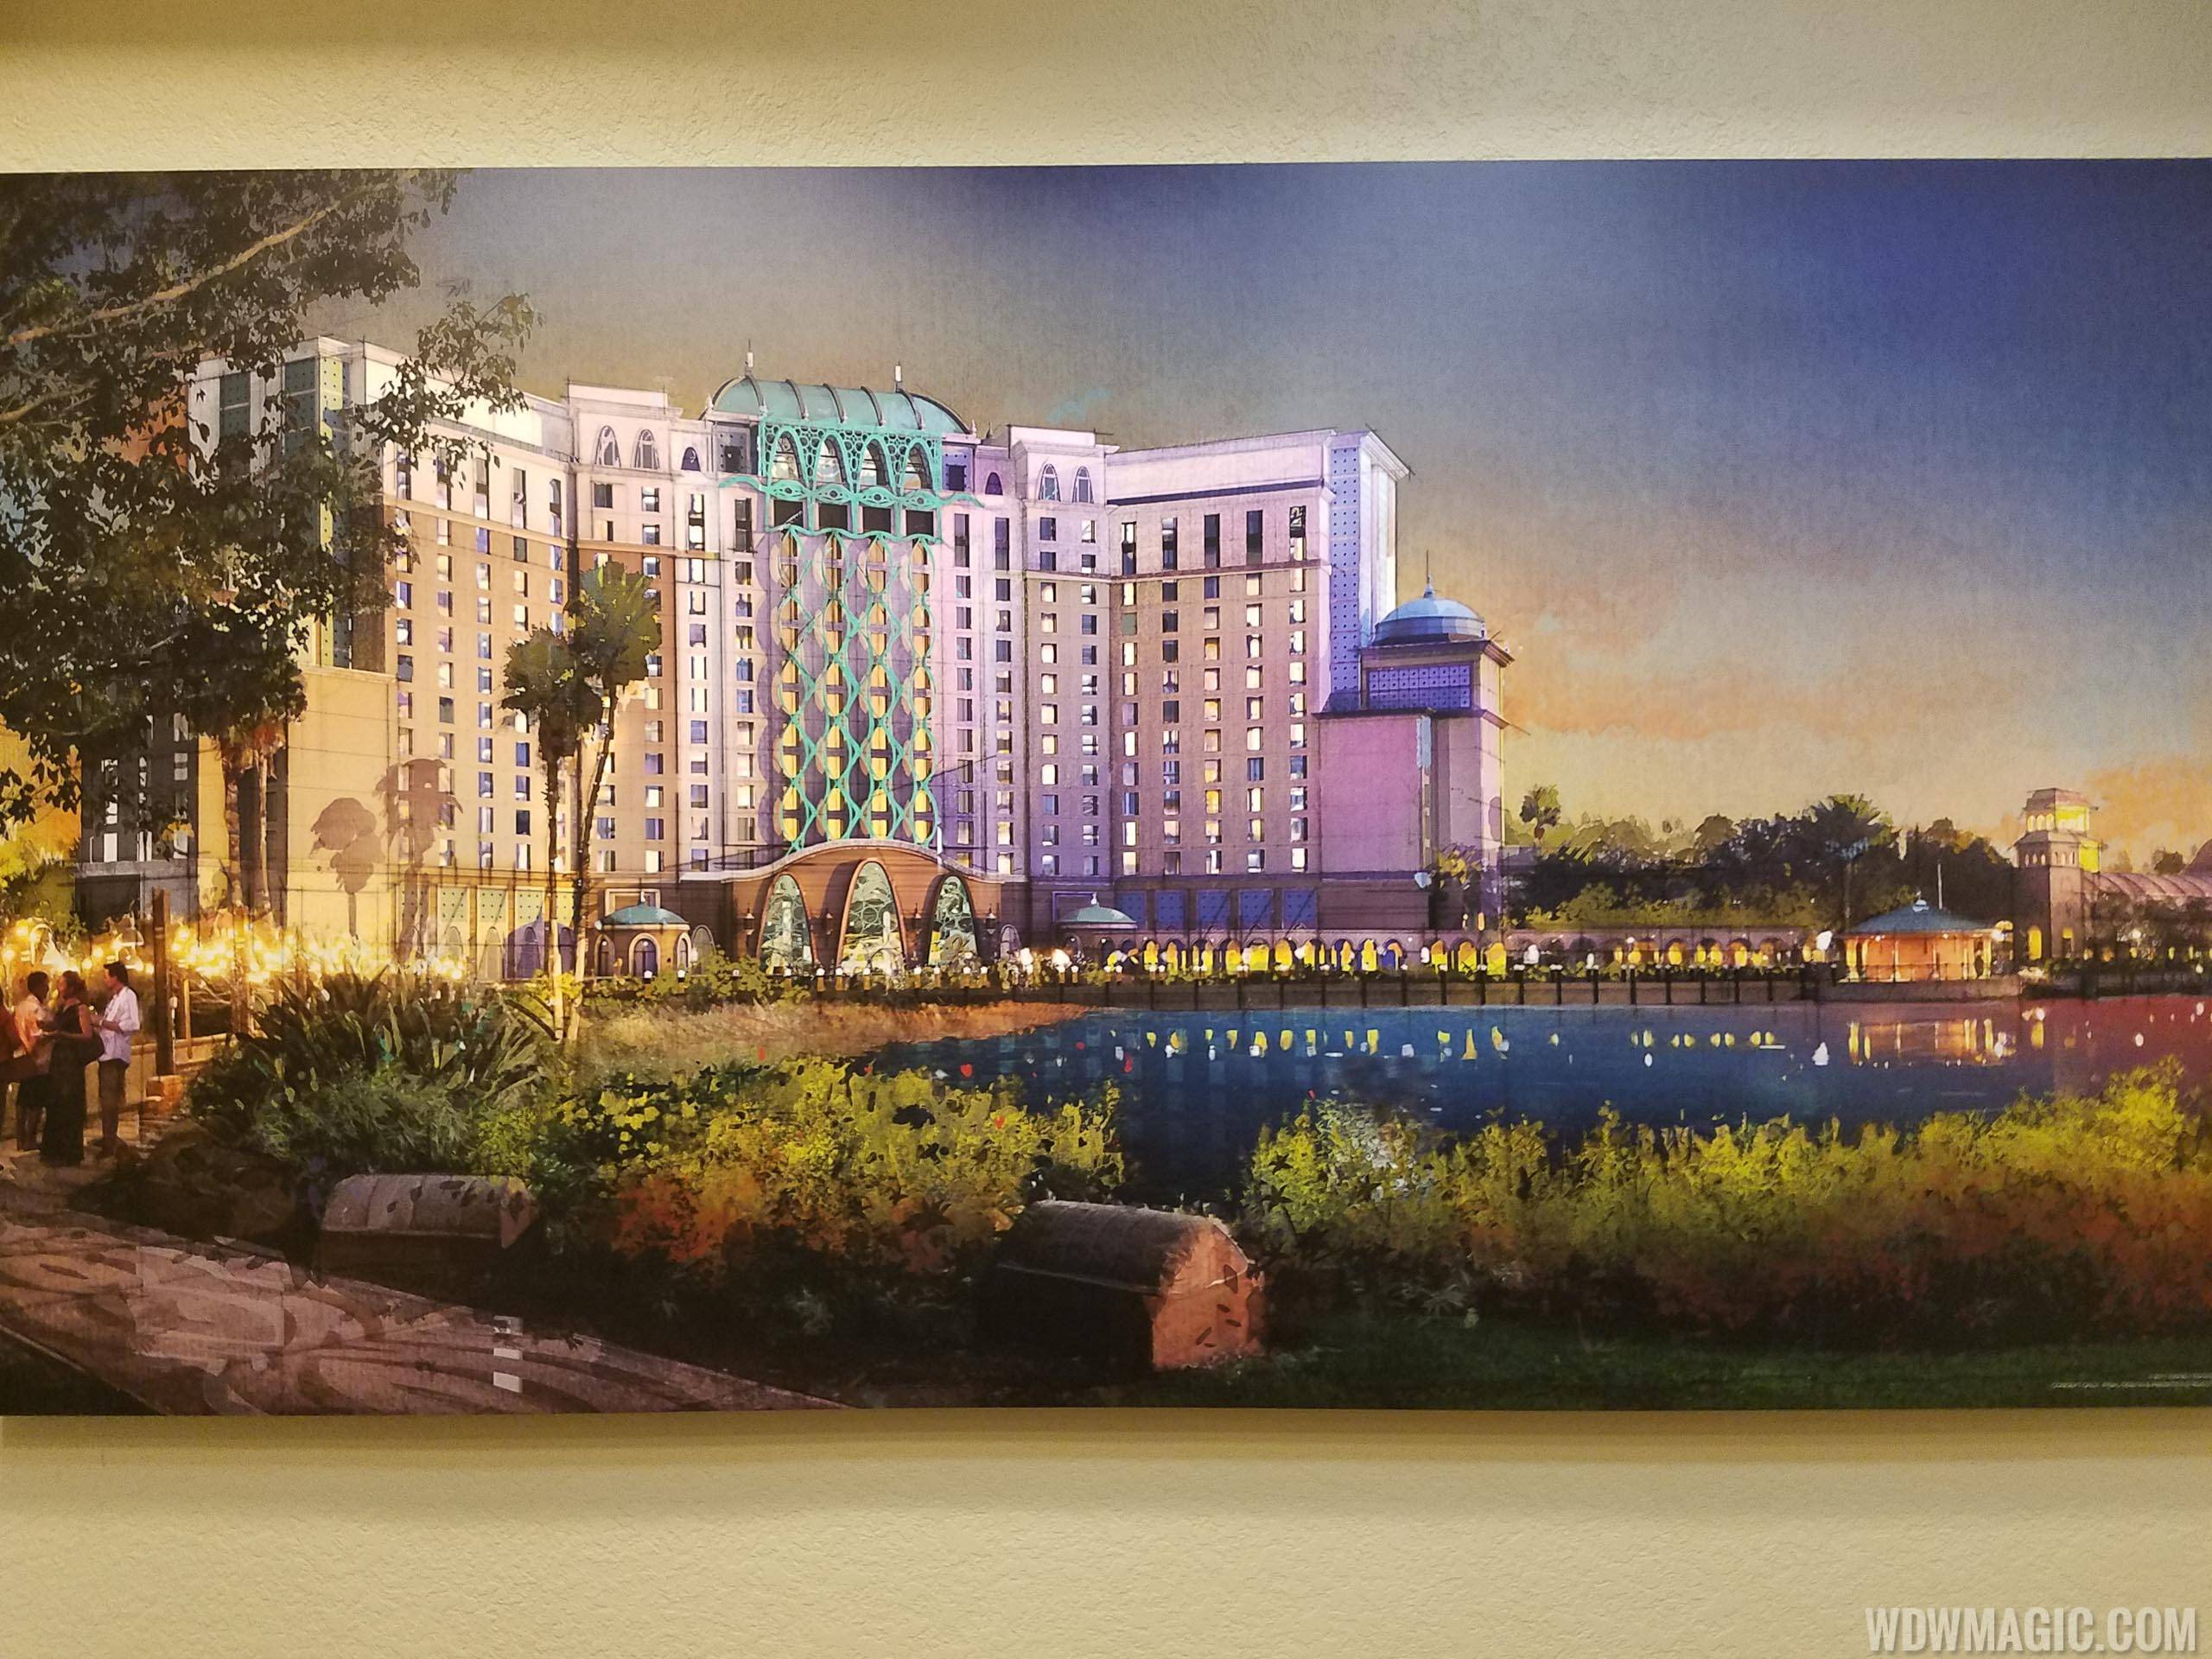 PHOTOS - Disney's Coronado Springs Resort expansion preview center